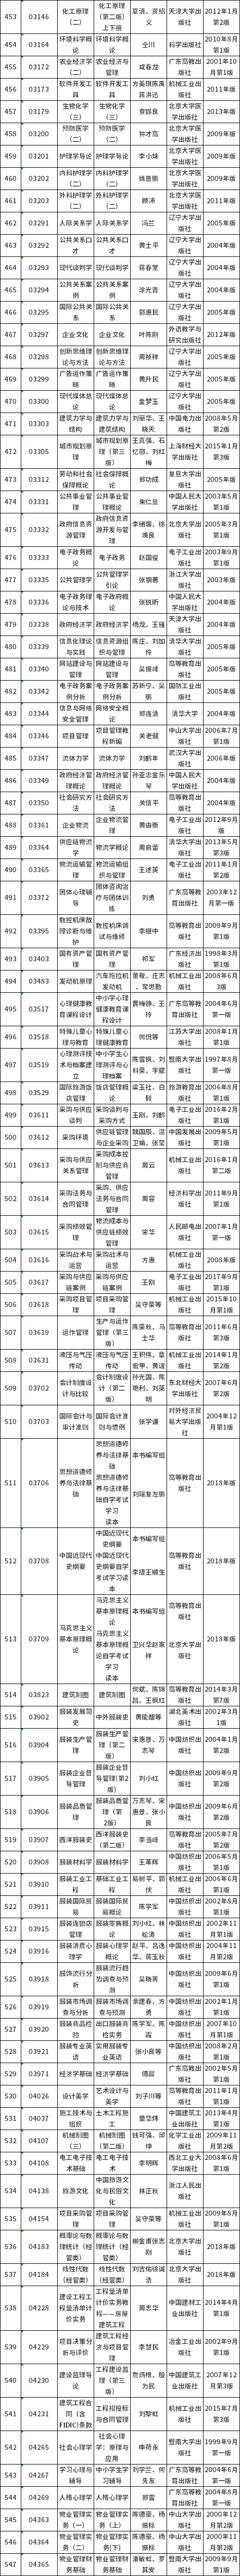 廣東省2022年自考開考課程使用教材表